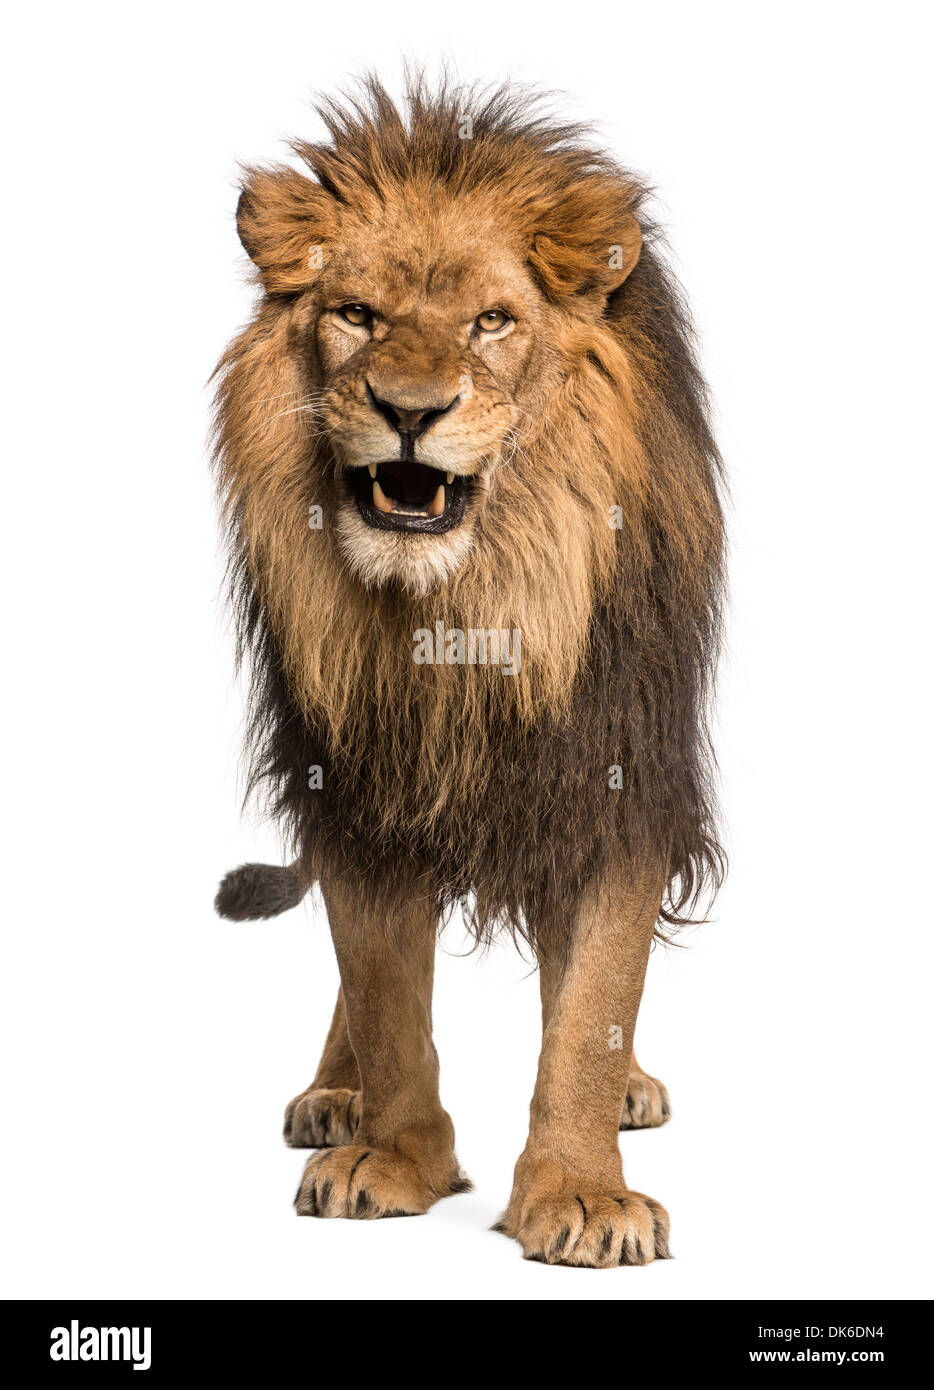 Vue de face d'un lion rugissant, comité permanent, Panthera leo, 10 ans, contre fond blanc Banque D'Images